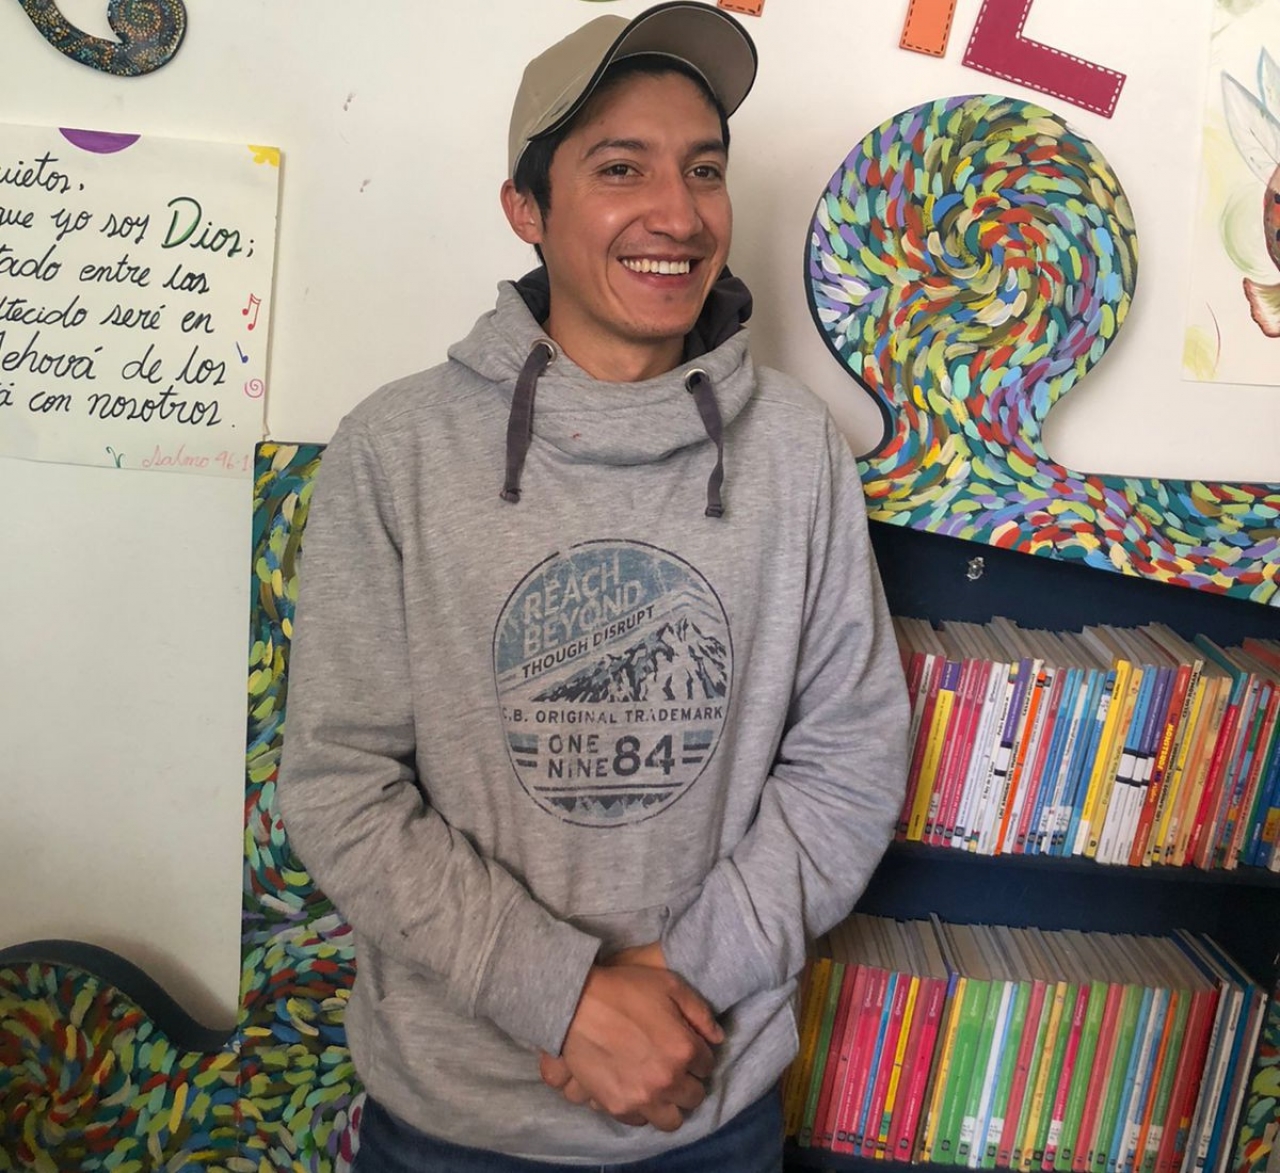 “Somos una escuela de sueños”: Carlos Solano, cofundador de la biblioteca Violetta en Ciudad Bolívar